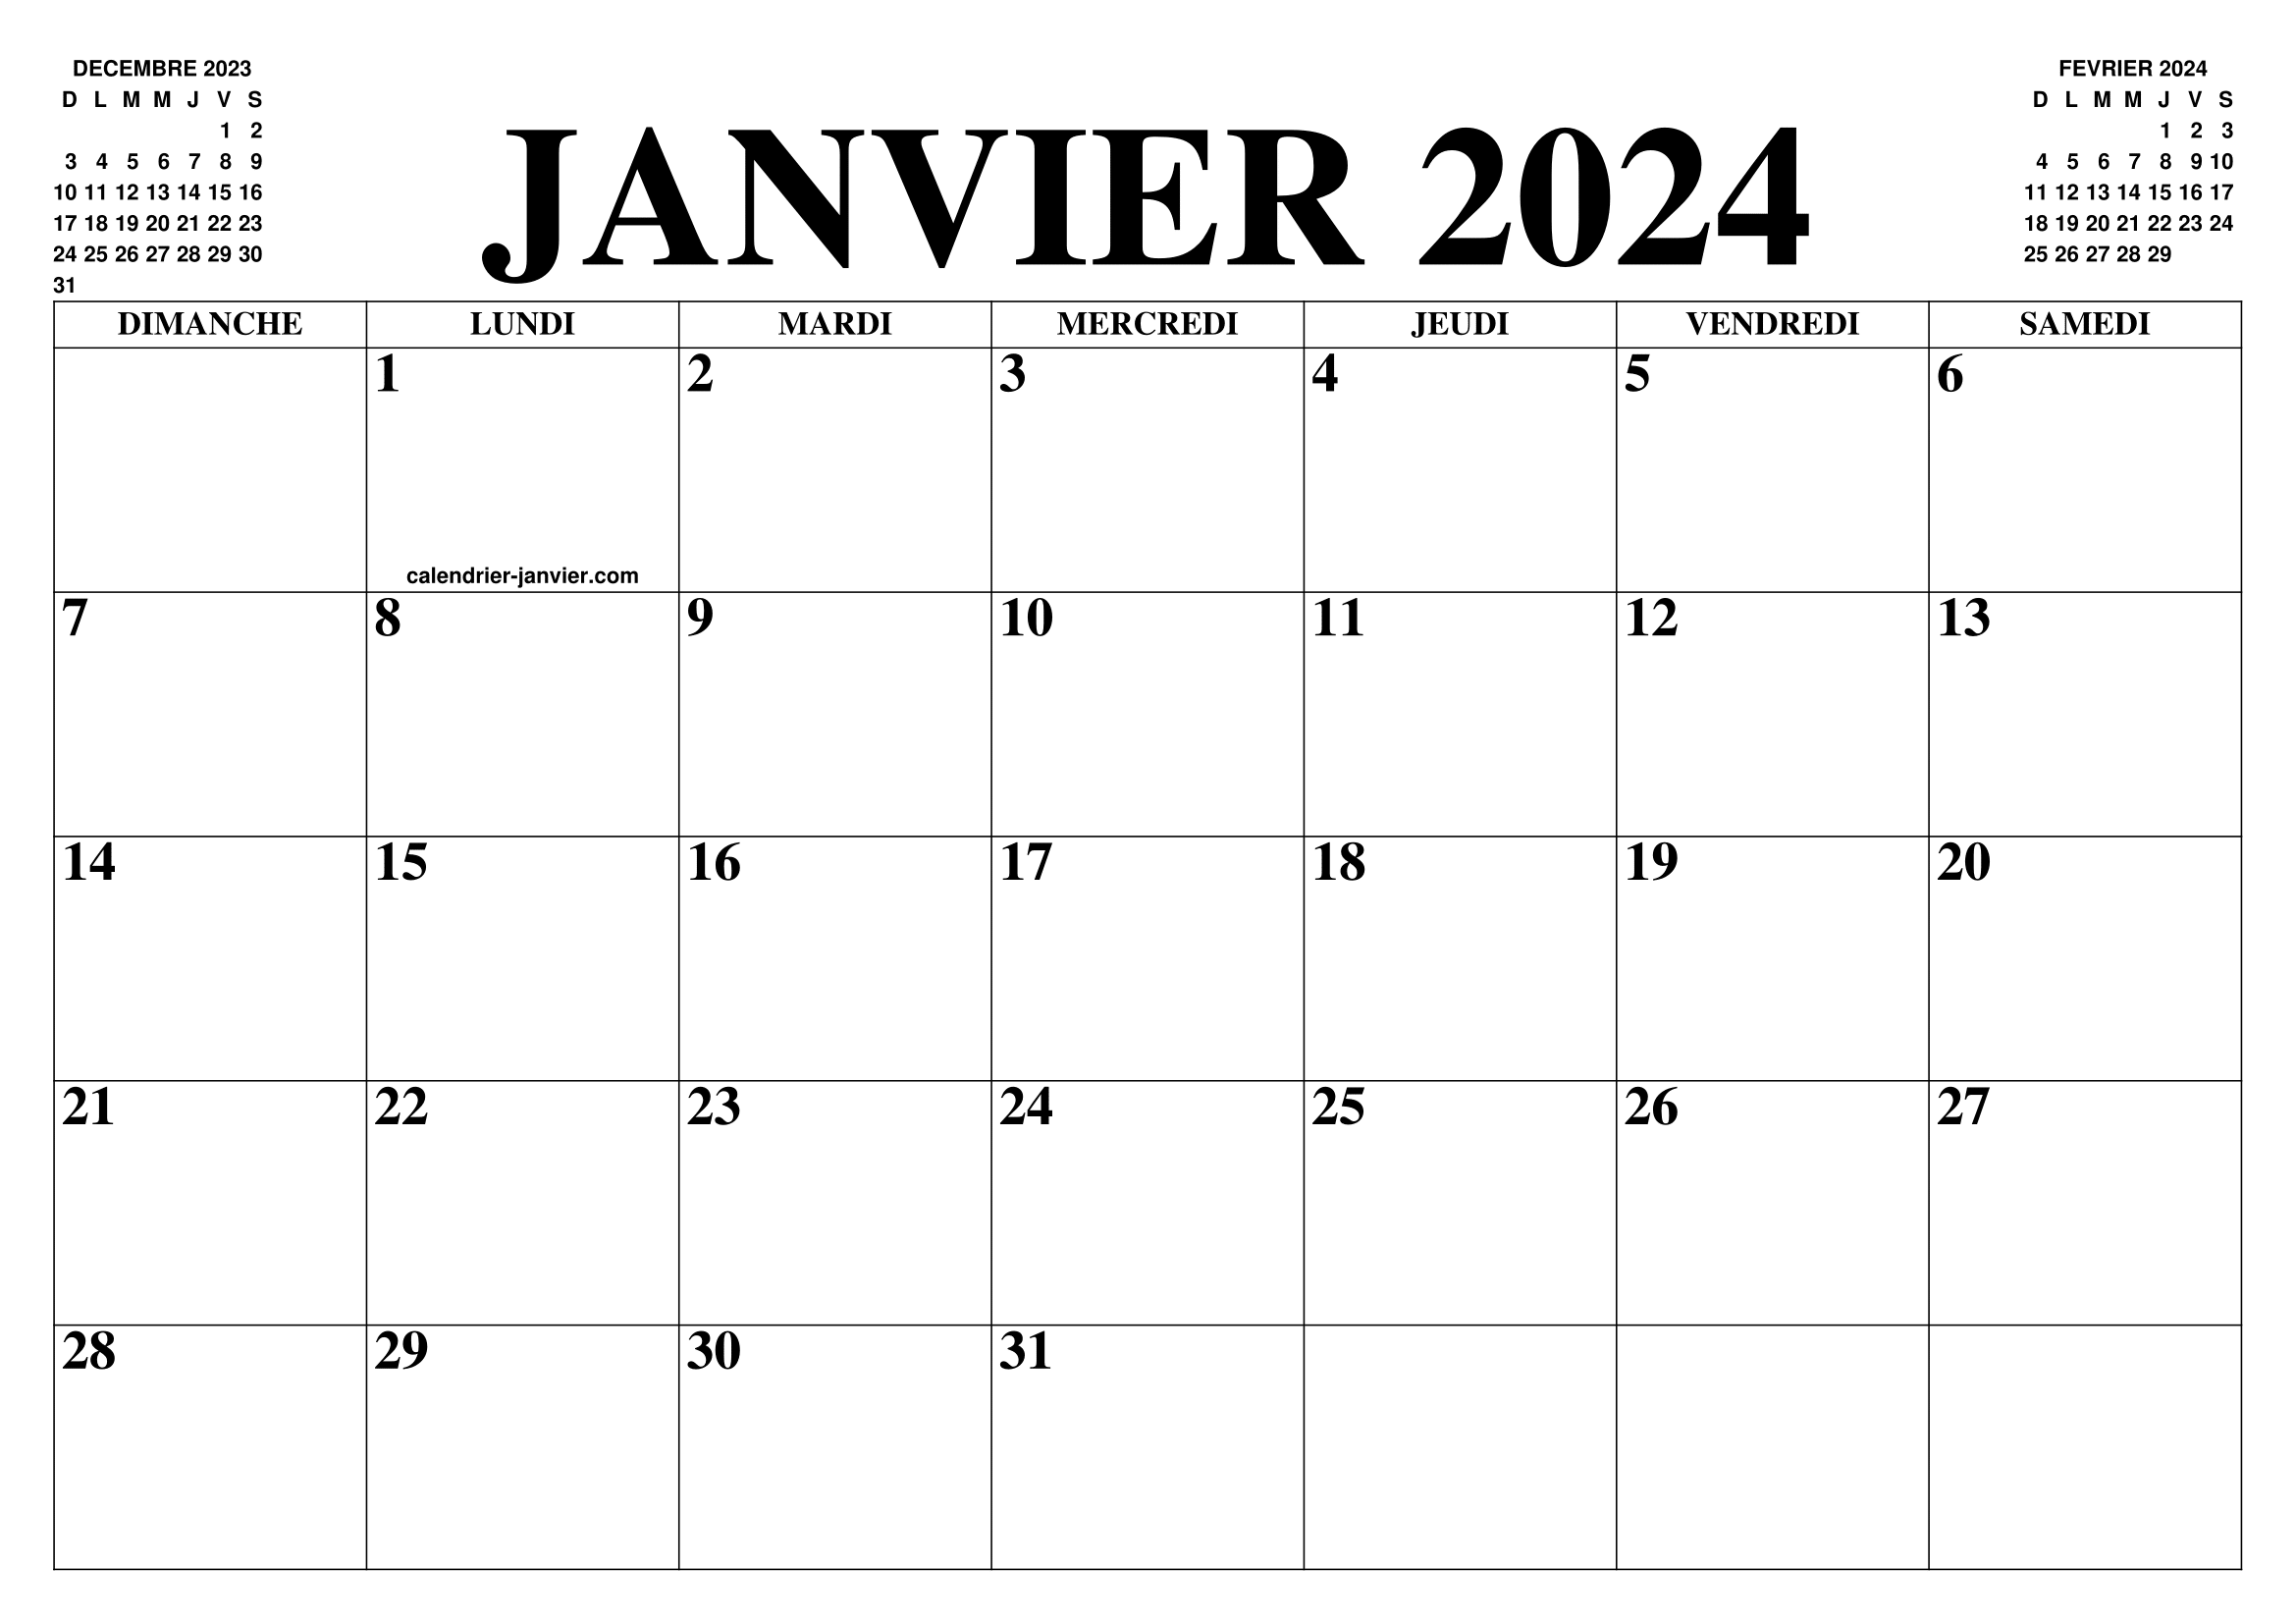 CALENDRIER JANVIER 2024 LE CALENDRIER DU MOIS DE JANVIER 2024 GRATUIT